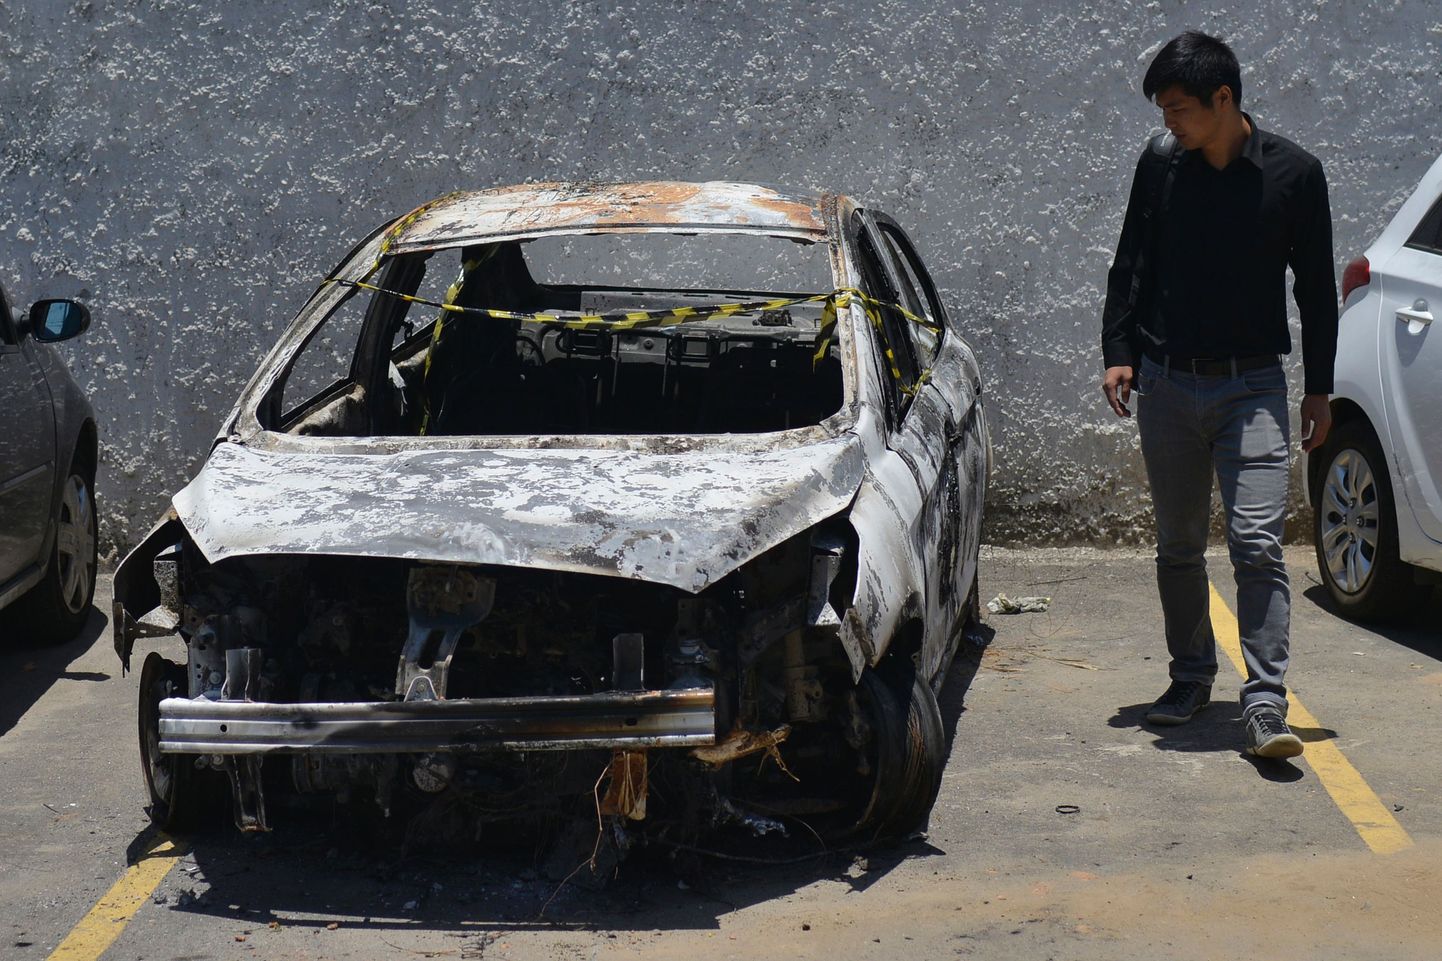 Бразильская полиция подтвердила, что в обгоревшей машине пропавшего посла Греции найдено его тело.